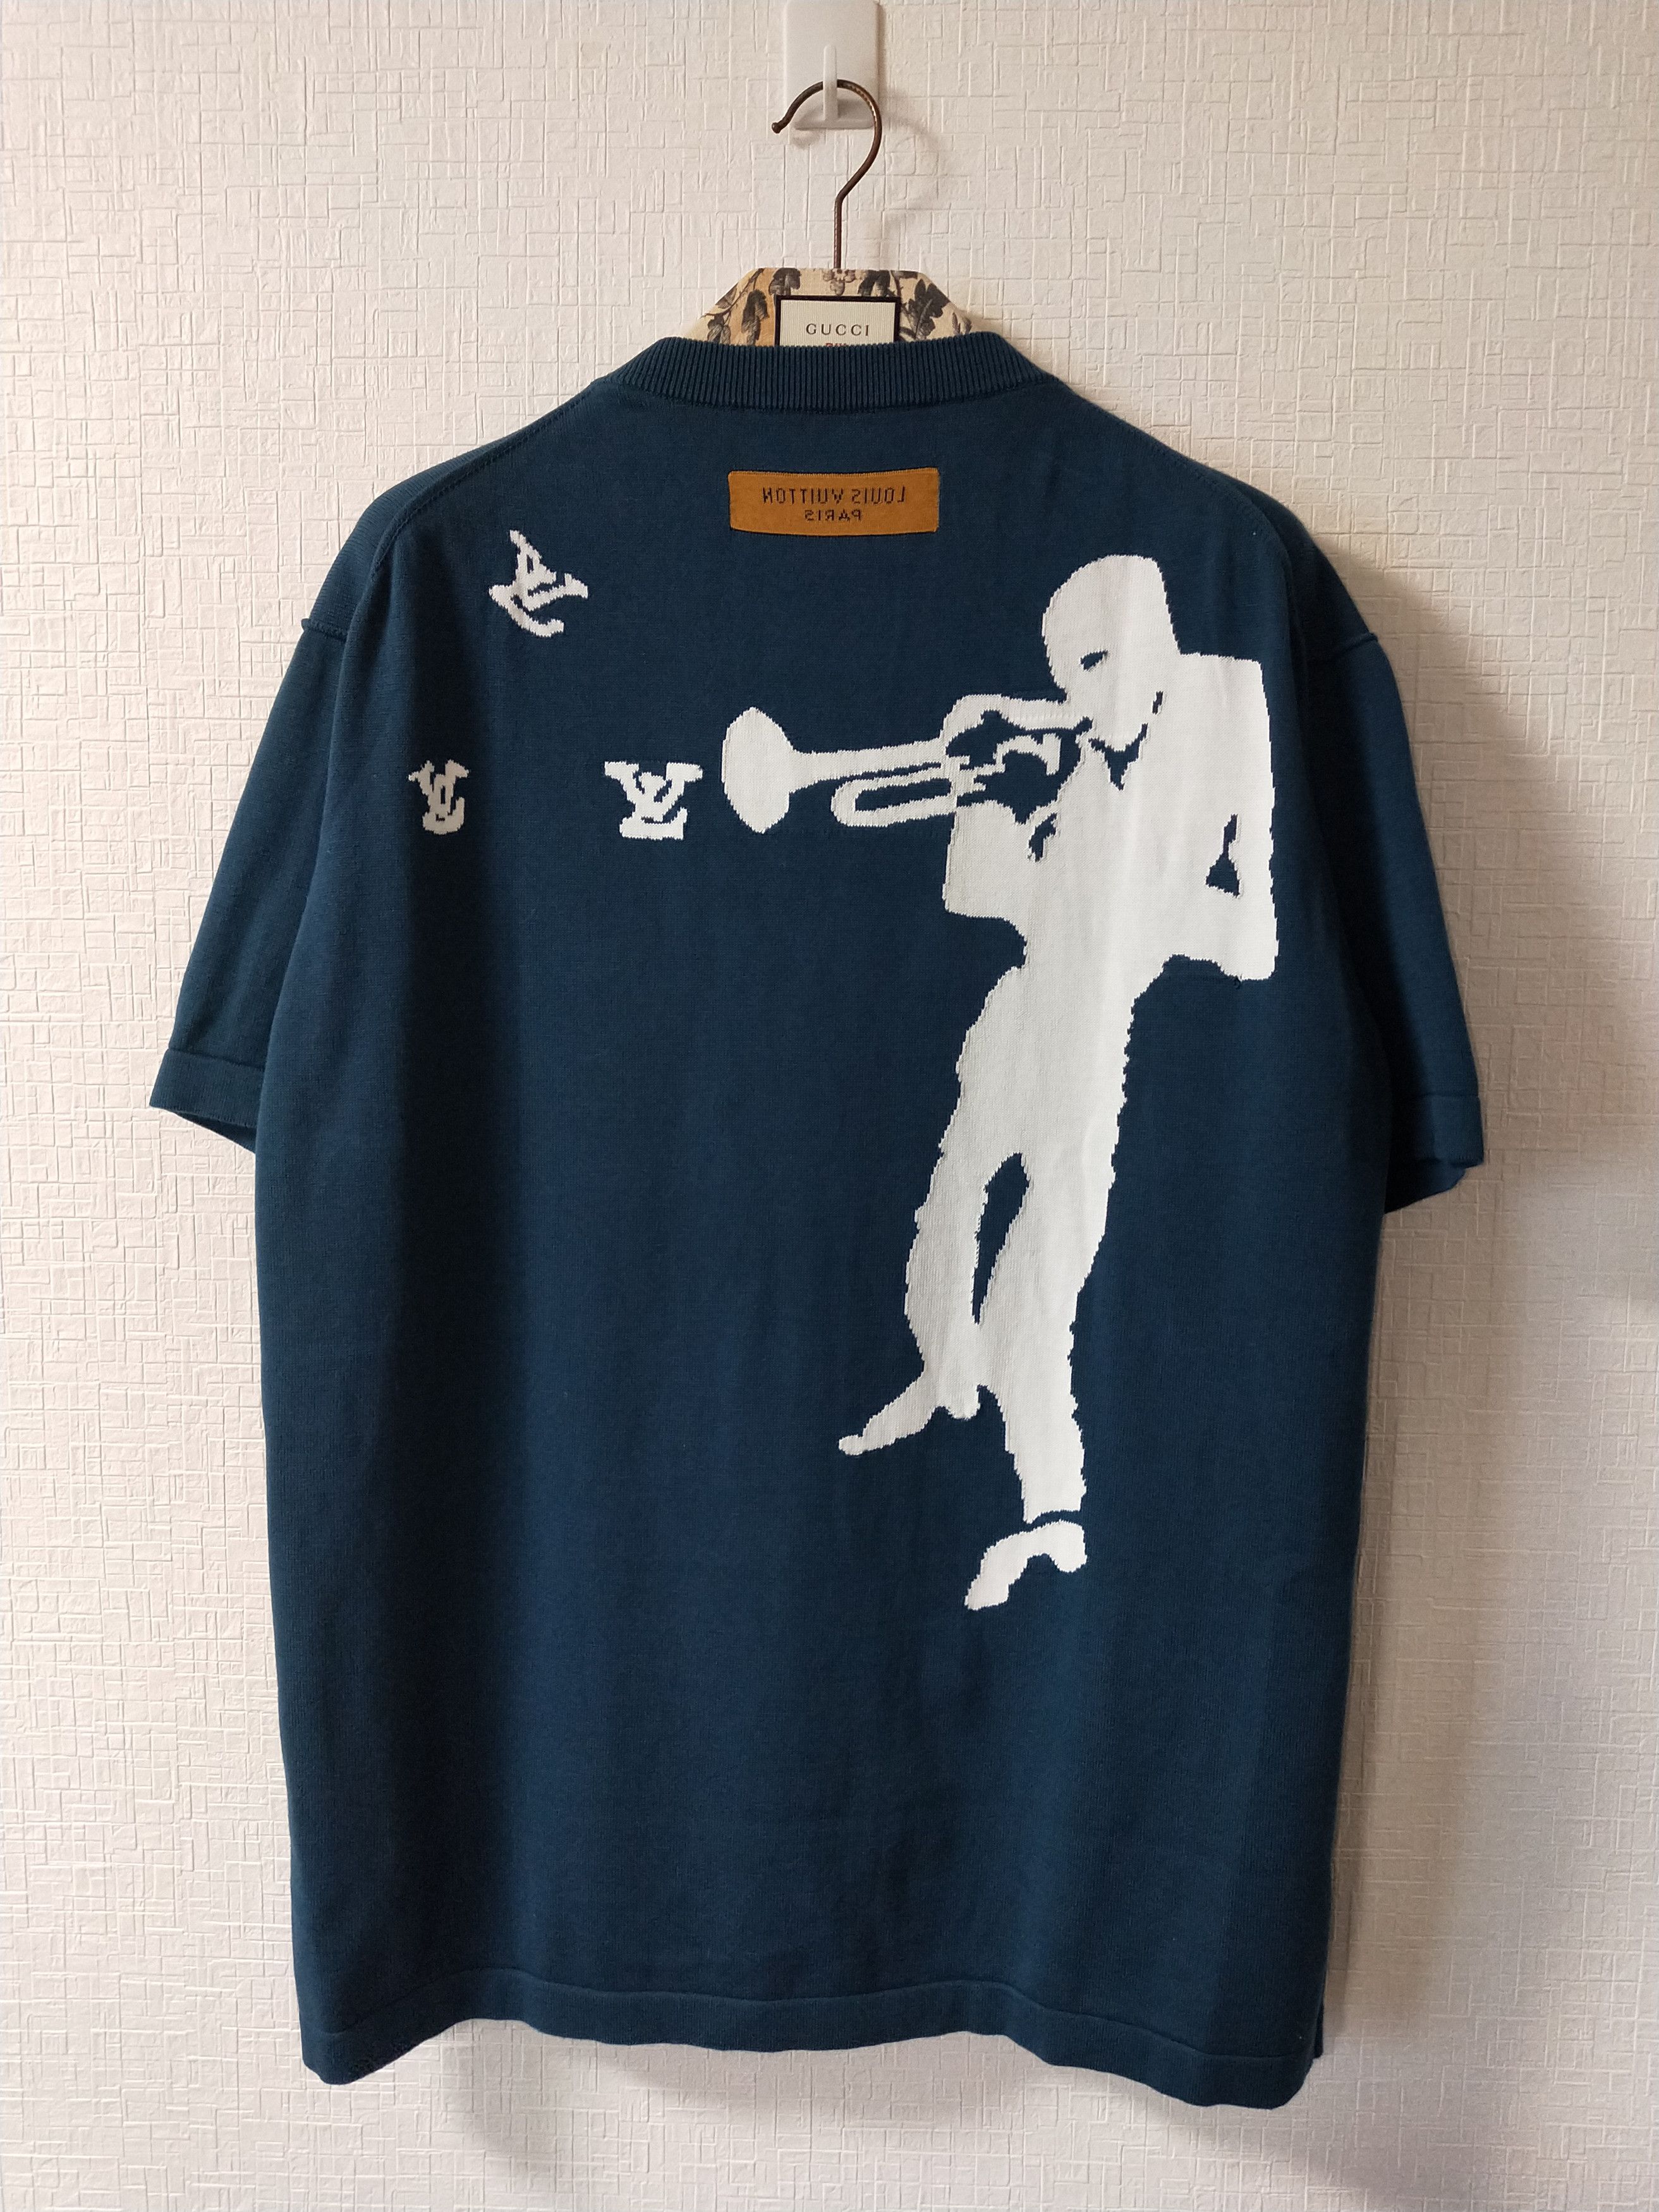 Louis Vuitton Teal Blue Jazz Trumpeter Signature Cotton Crew Neck T-Shirt M  Louis Vuitton